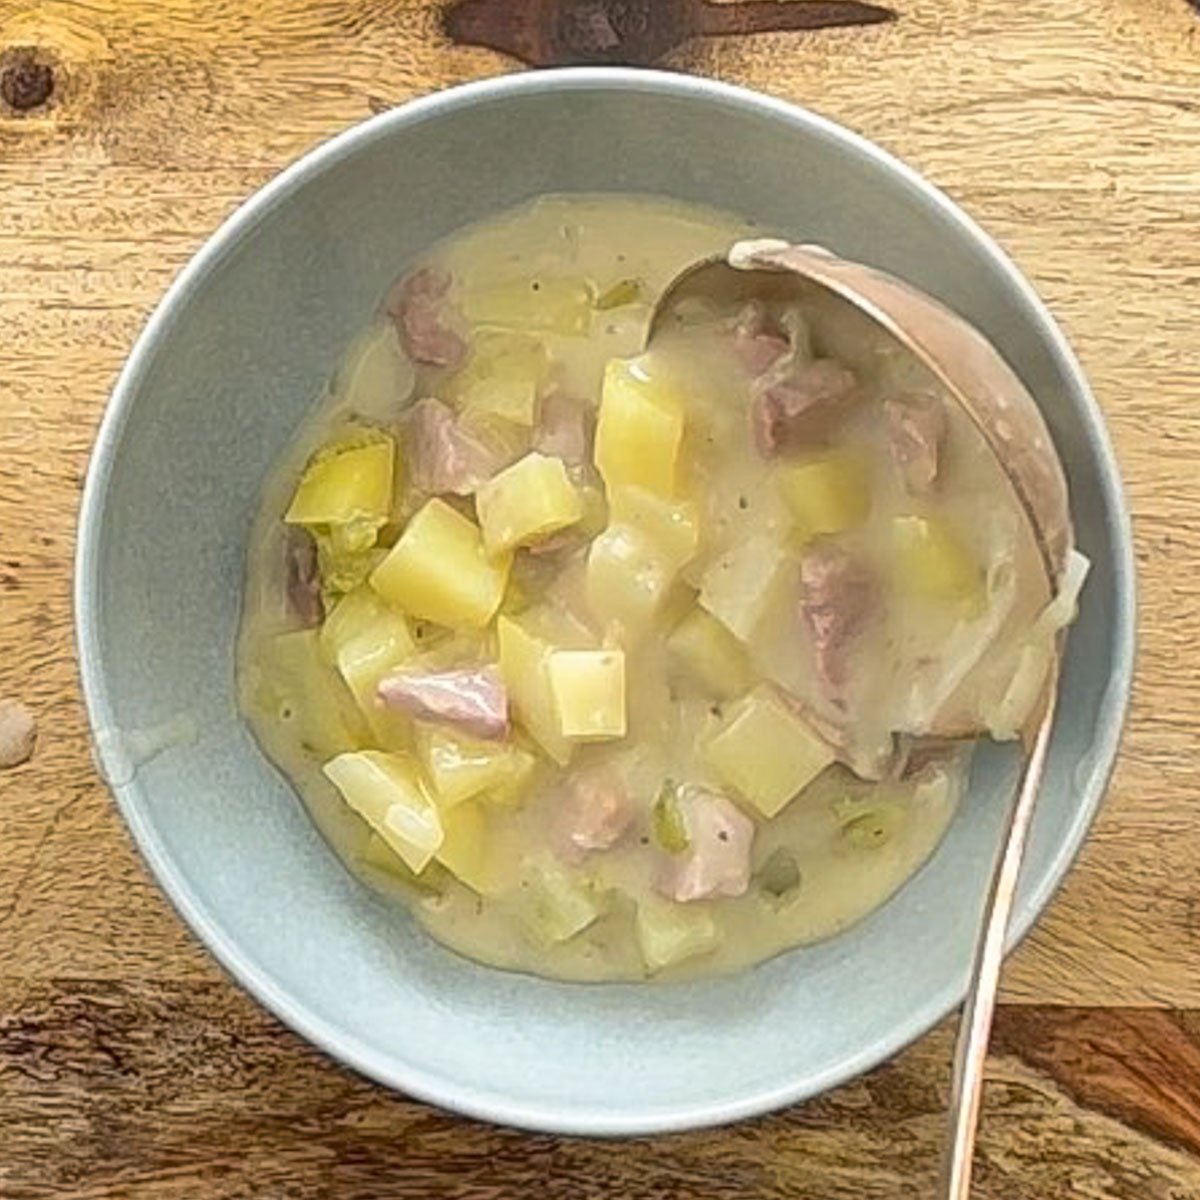 Ladle pouring potato soup with ham into a blue bowl.